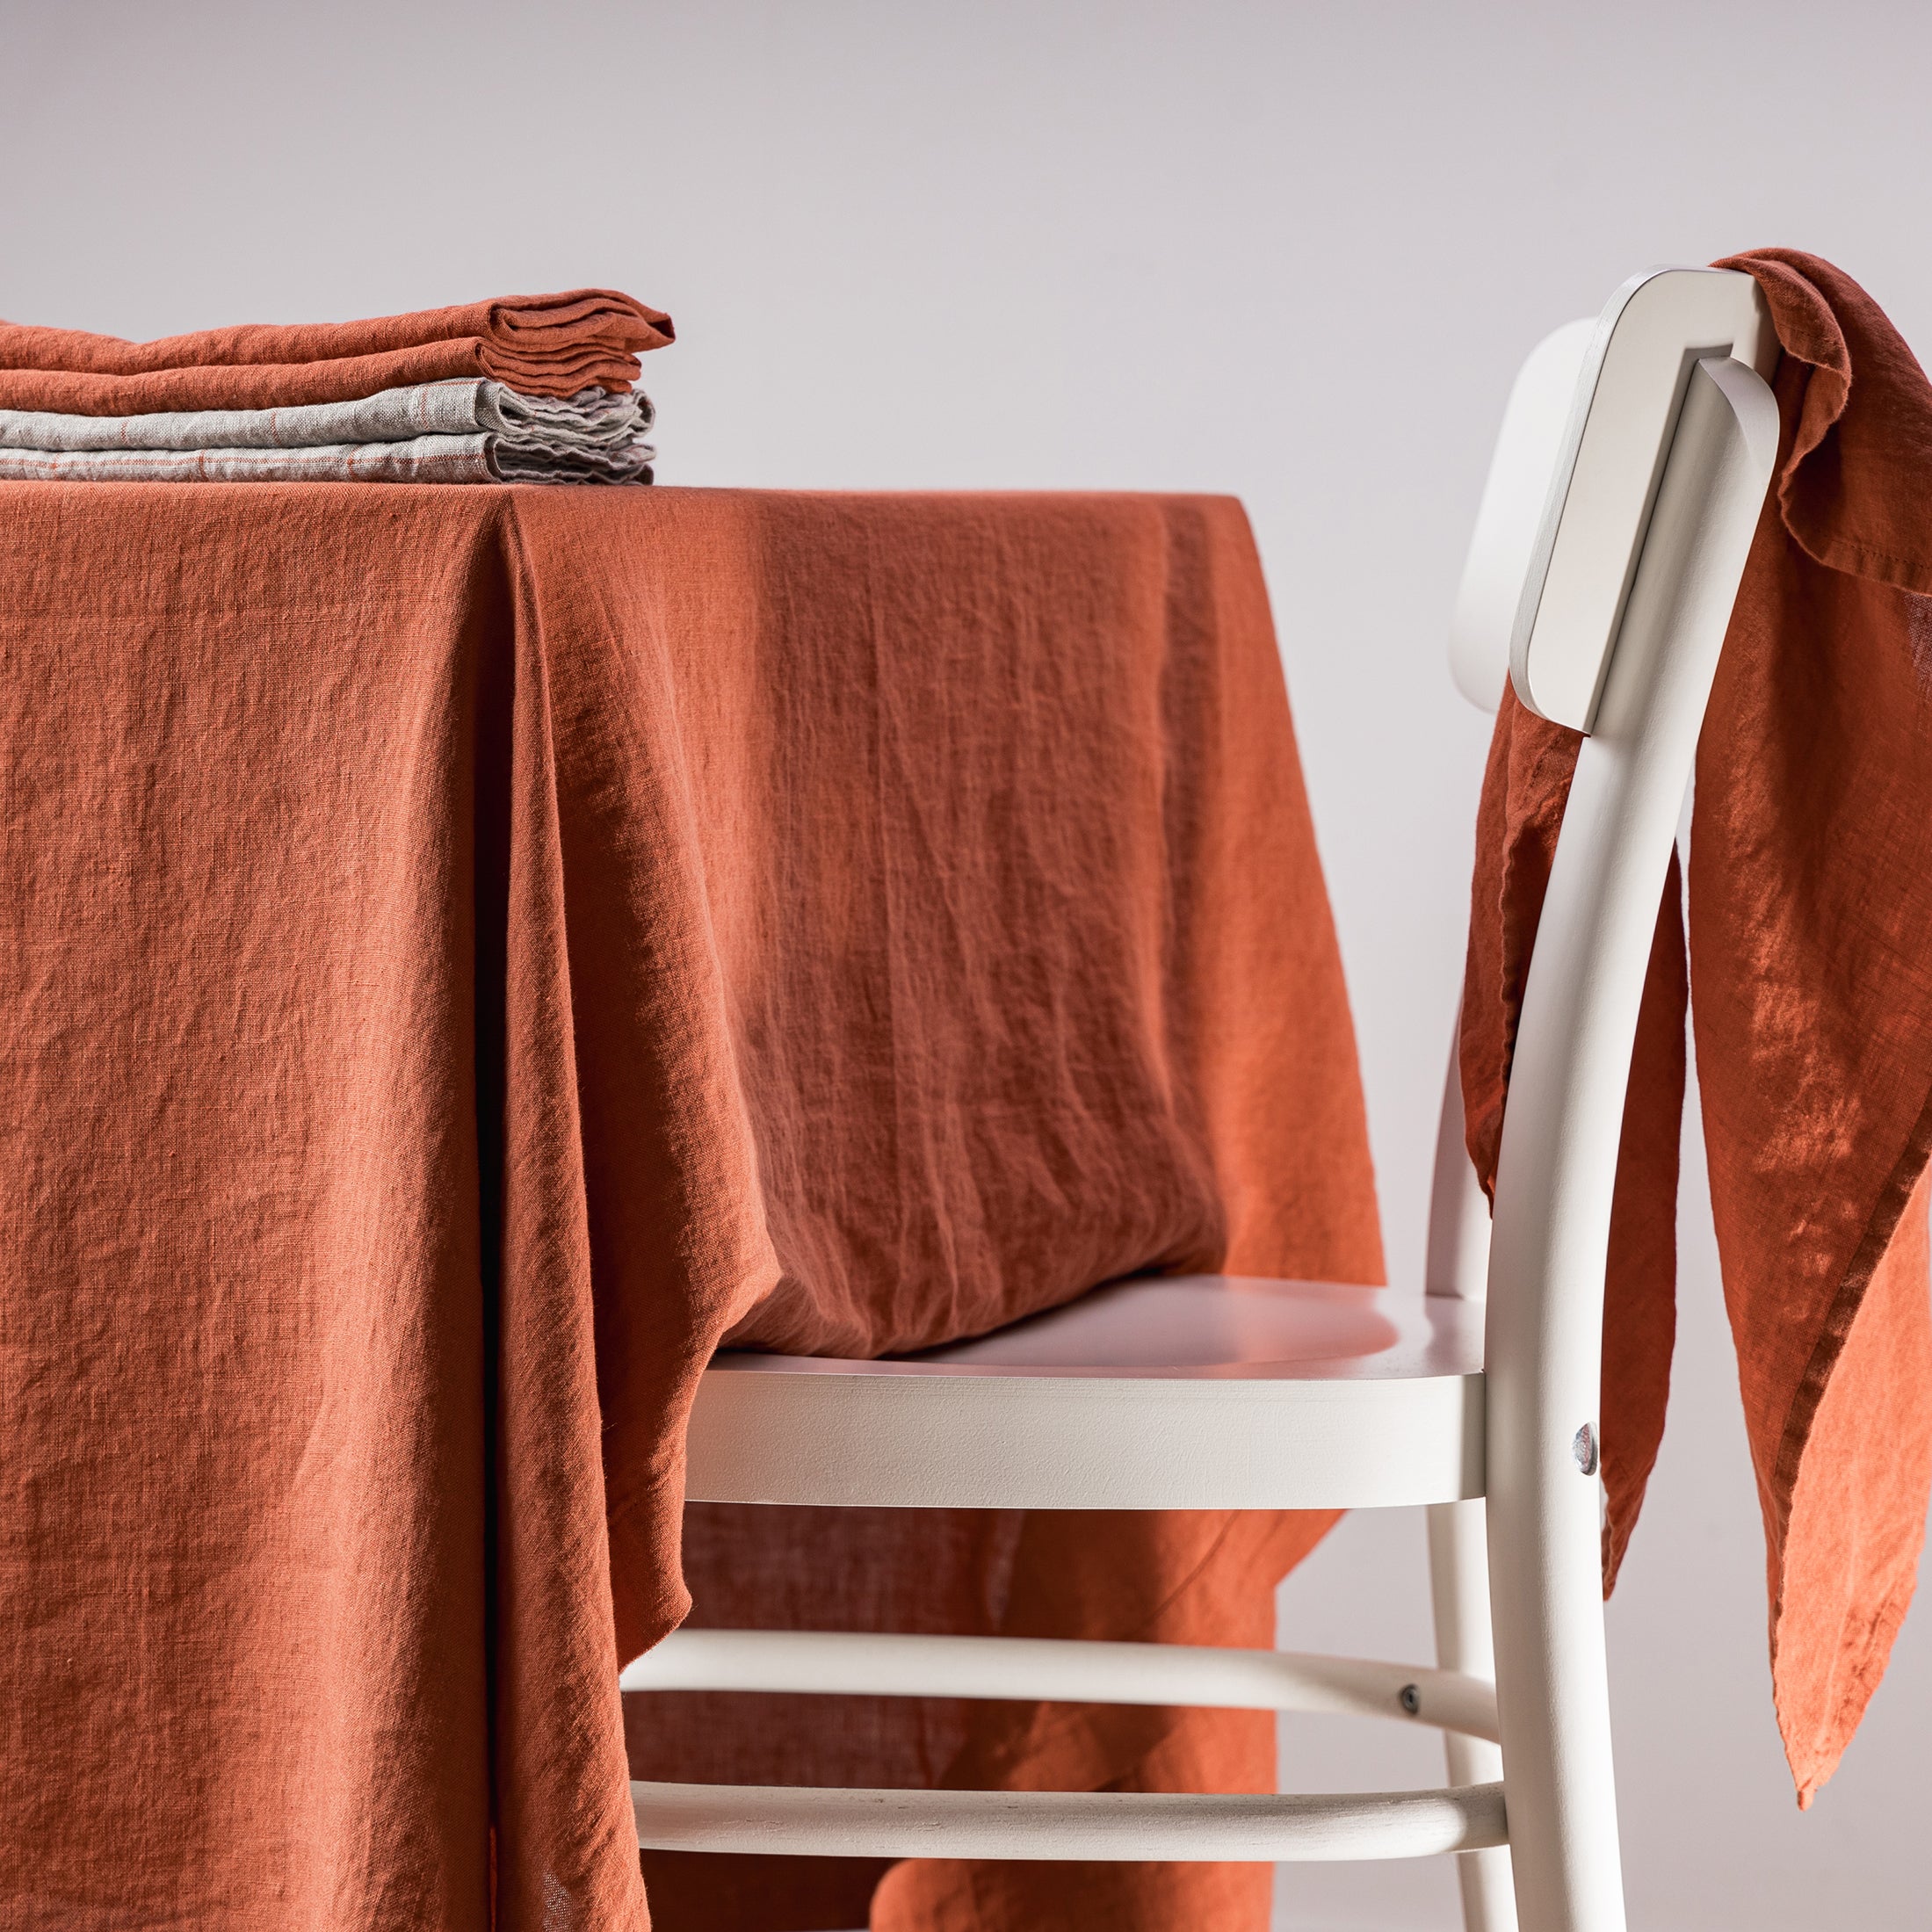 Herring & Bones - Concept Store Joyeux - LinenMe - Serviettes de table - Lot de 2 serviettes de table en lin lavé